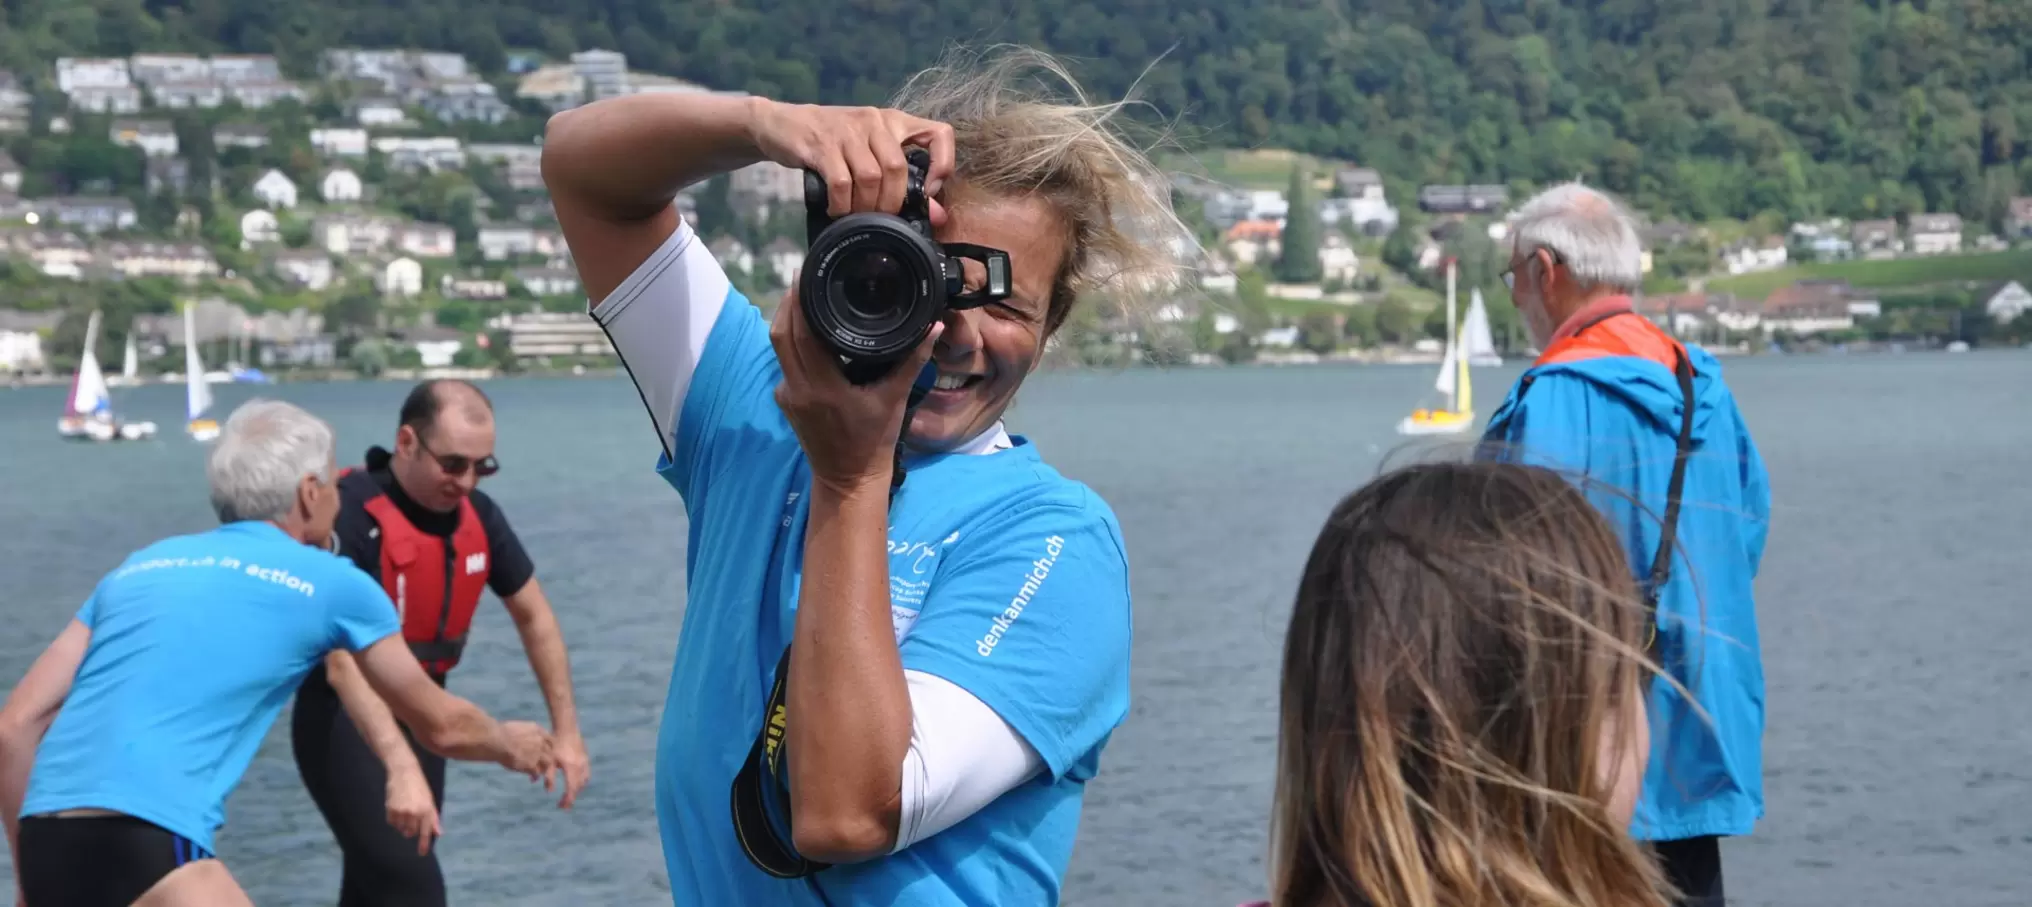 Katharina Braun beim Fotografieren am "Come on board"